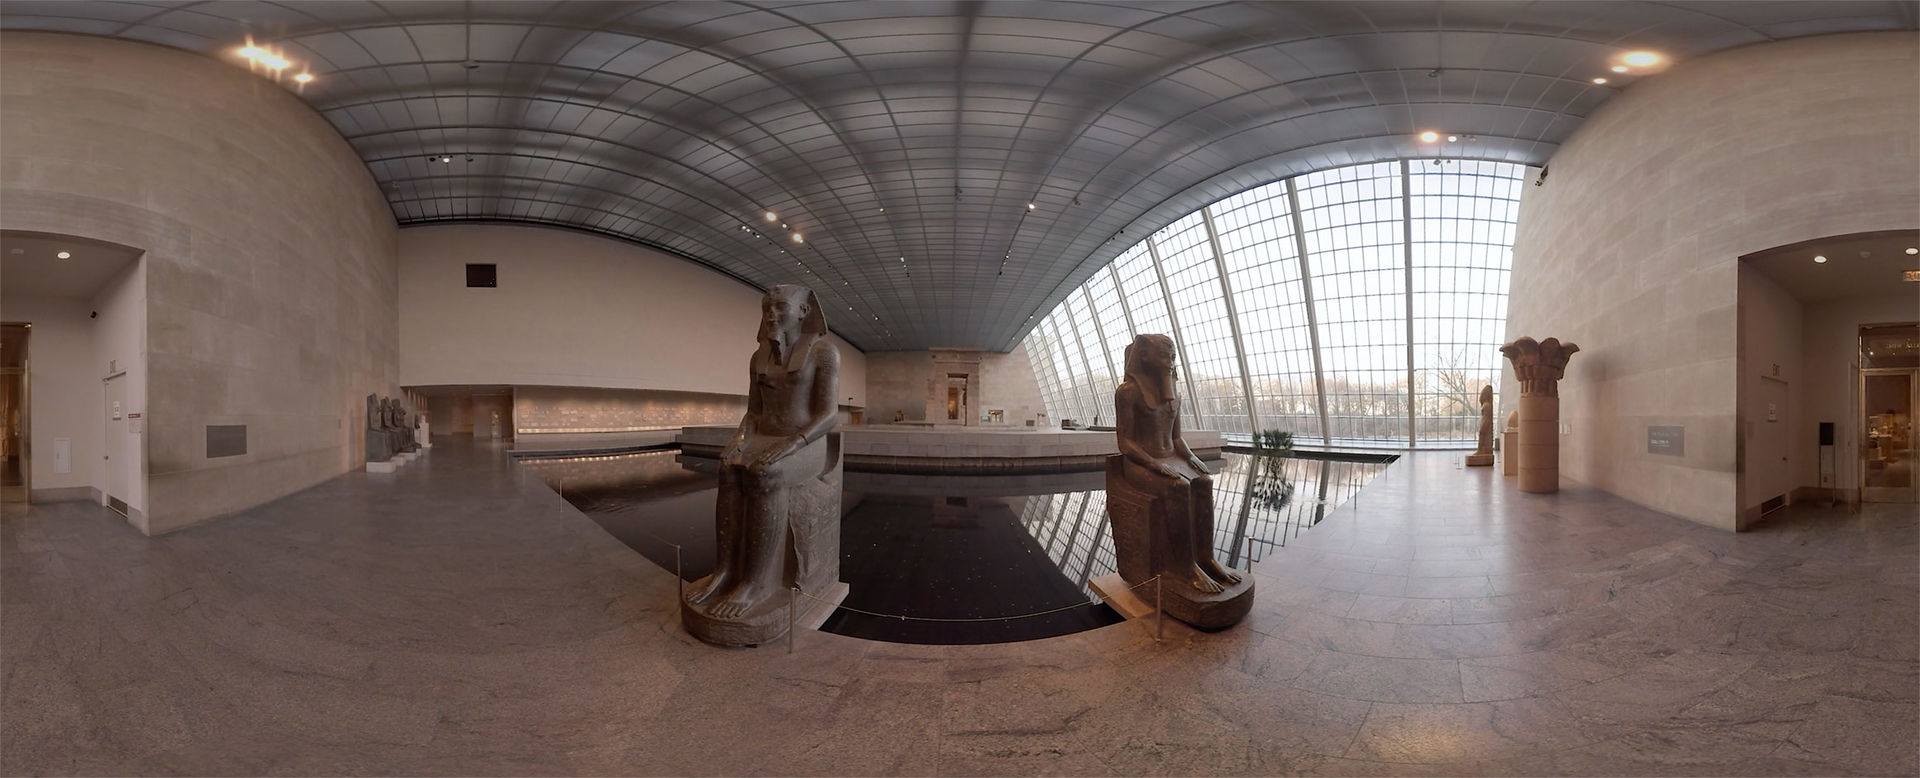 frø Natur Derfor The Met 360° Project | The Metropolitan Museum of Art